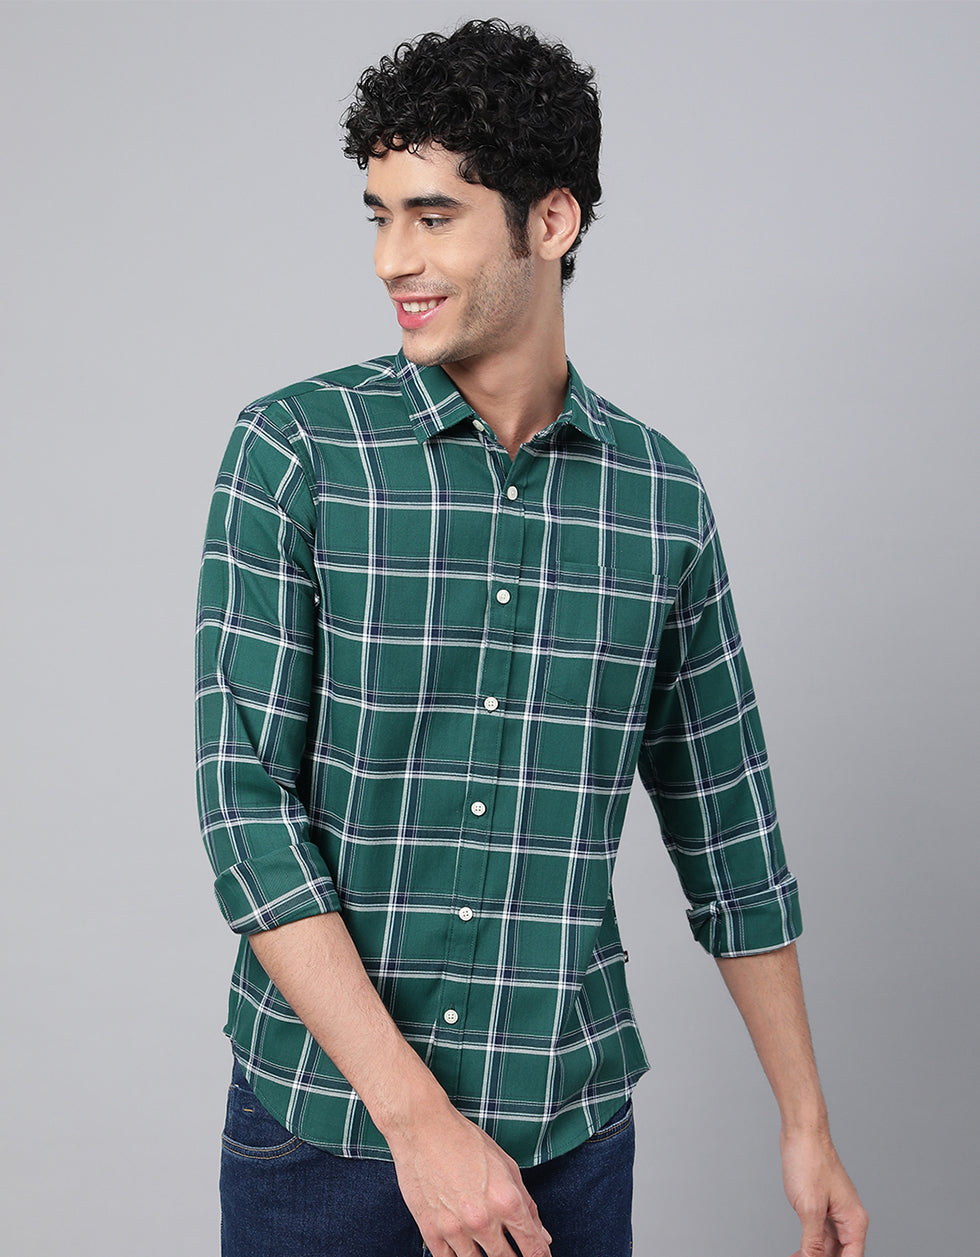 Green Checks Men's Shirt Veirdo